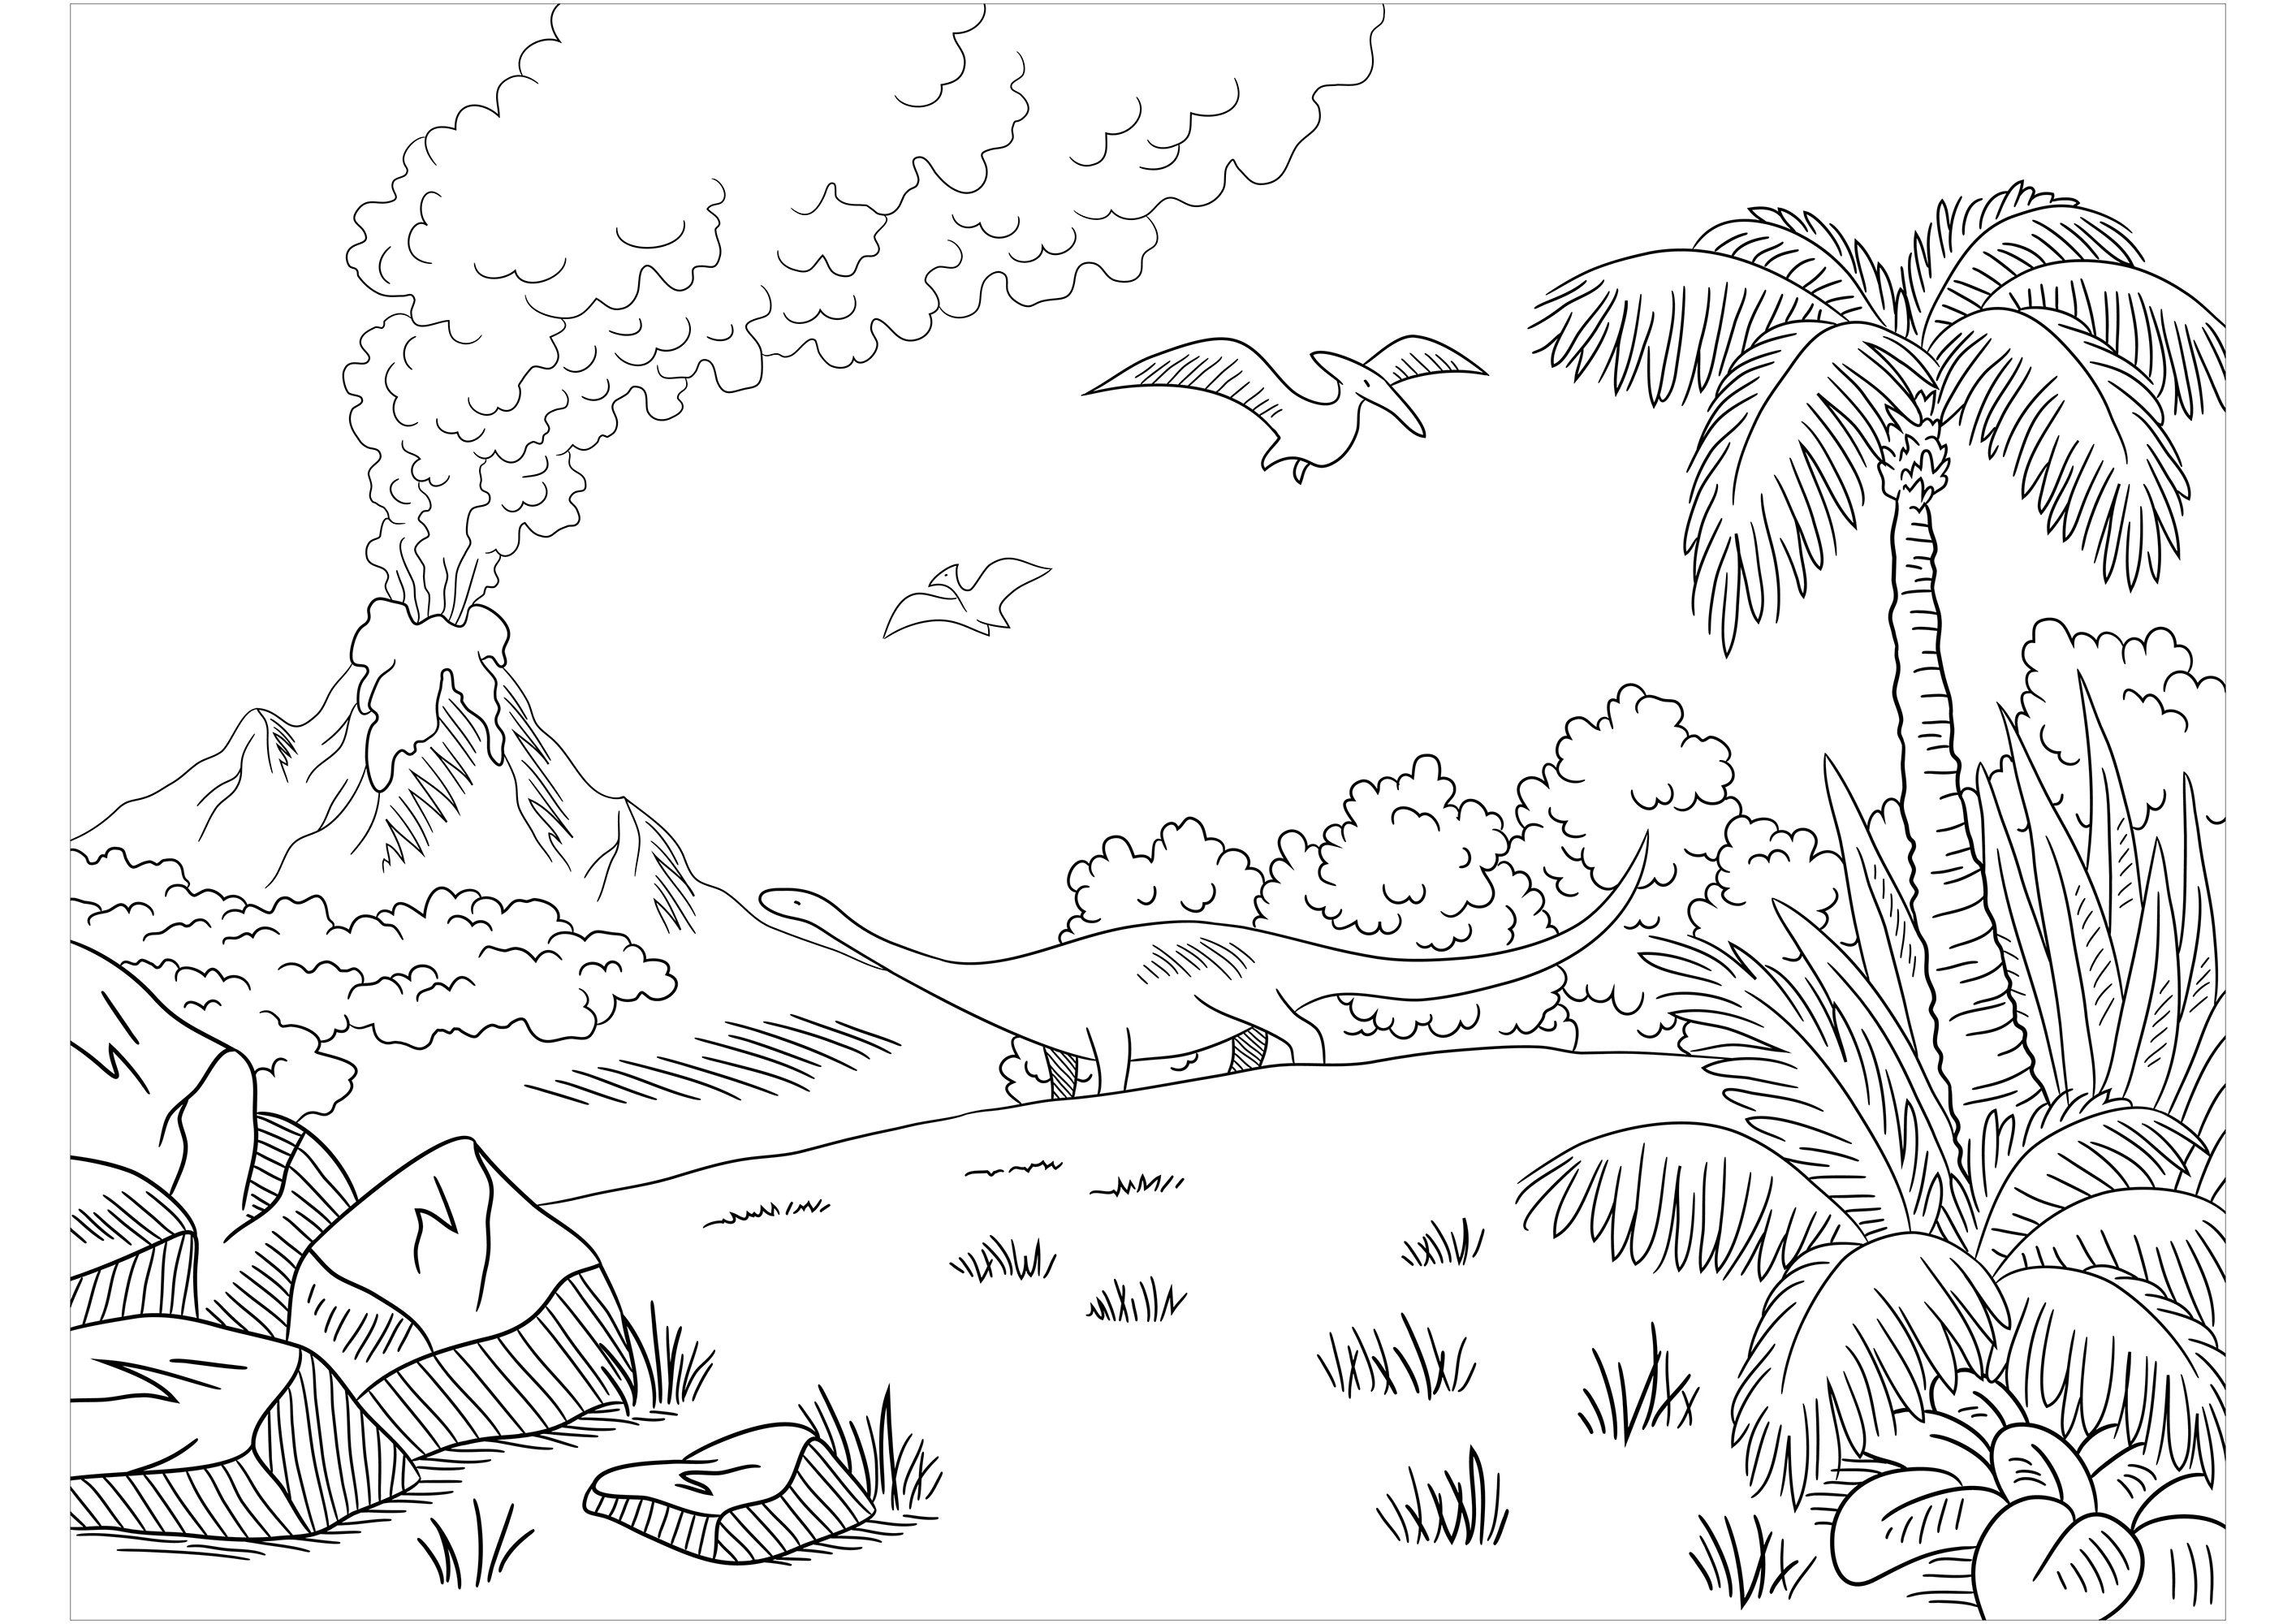 Diplodocus y Velociraptor, huyendo de un volcán en erupción